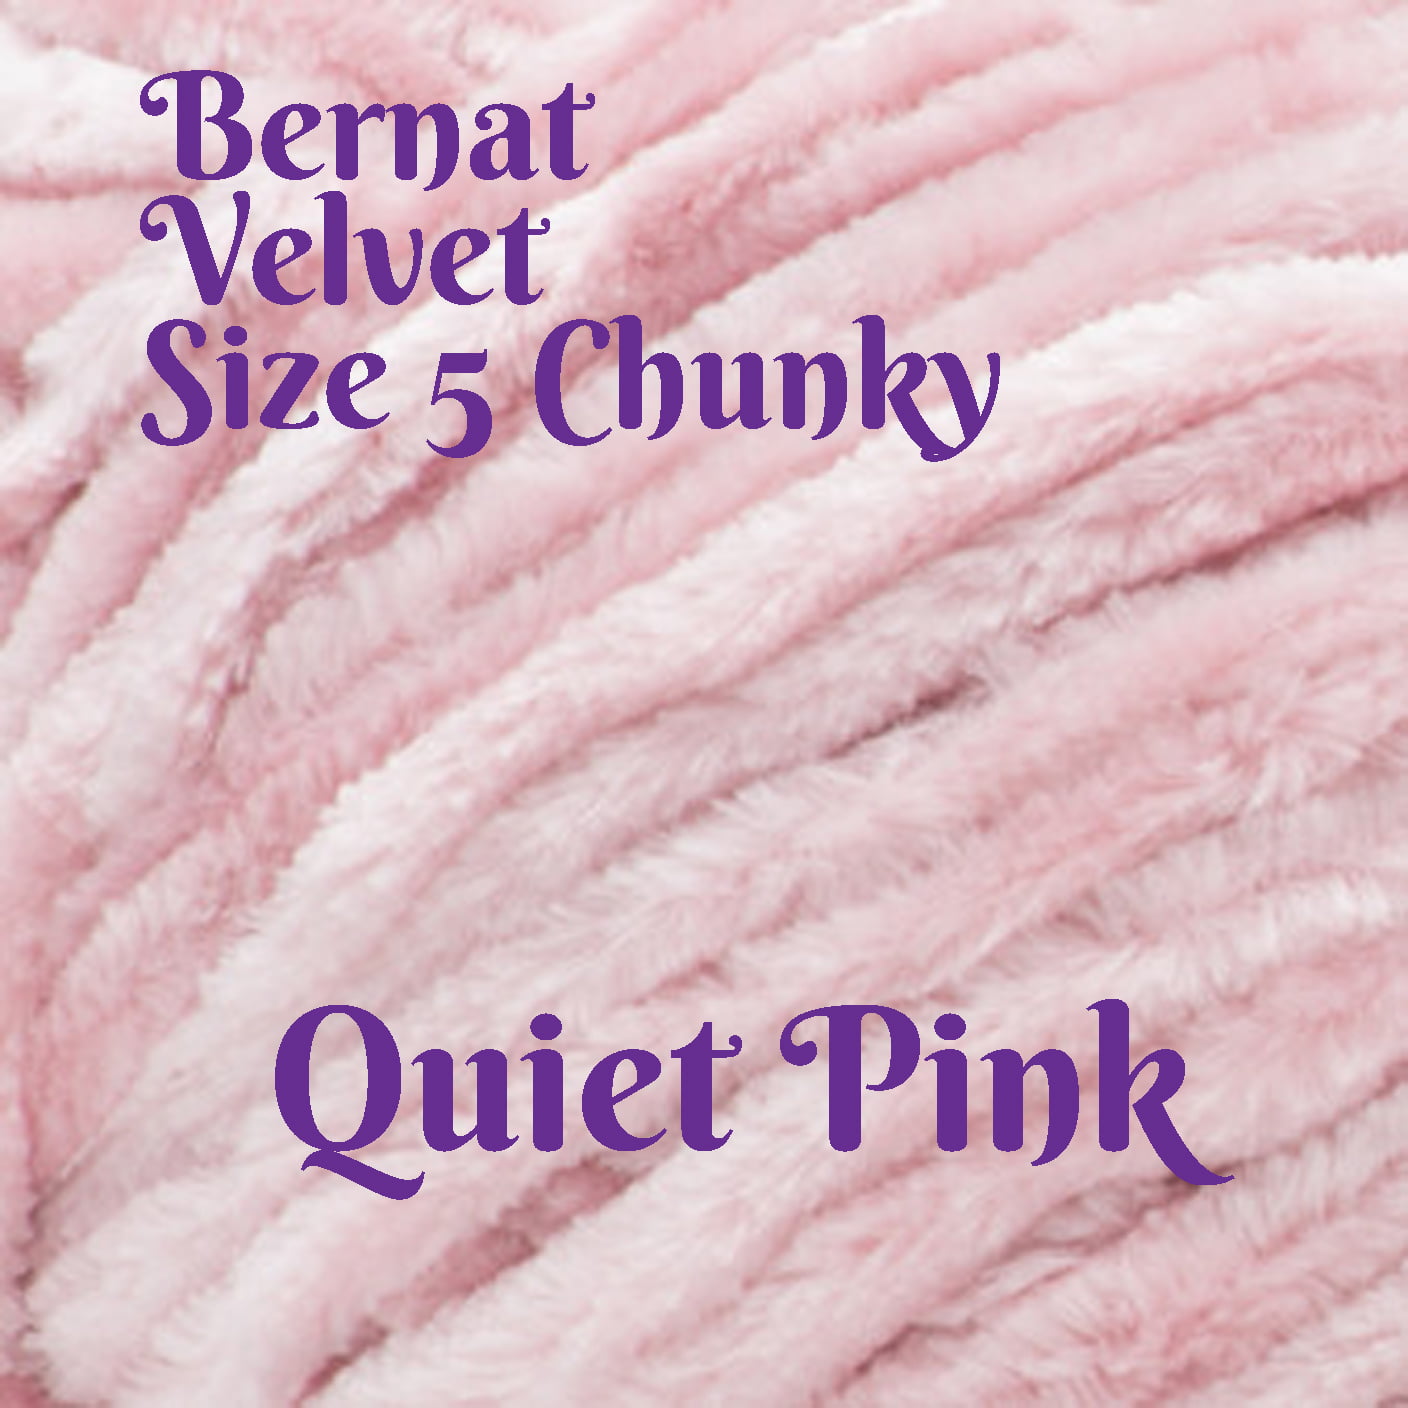 Bernat Velvet Yarn - Smokey Blue